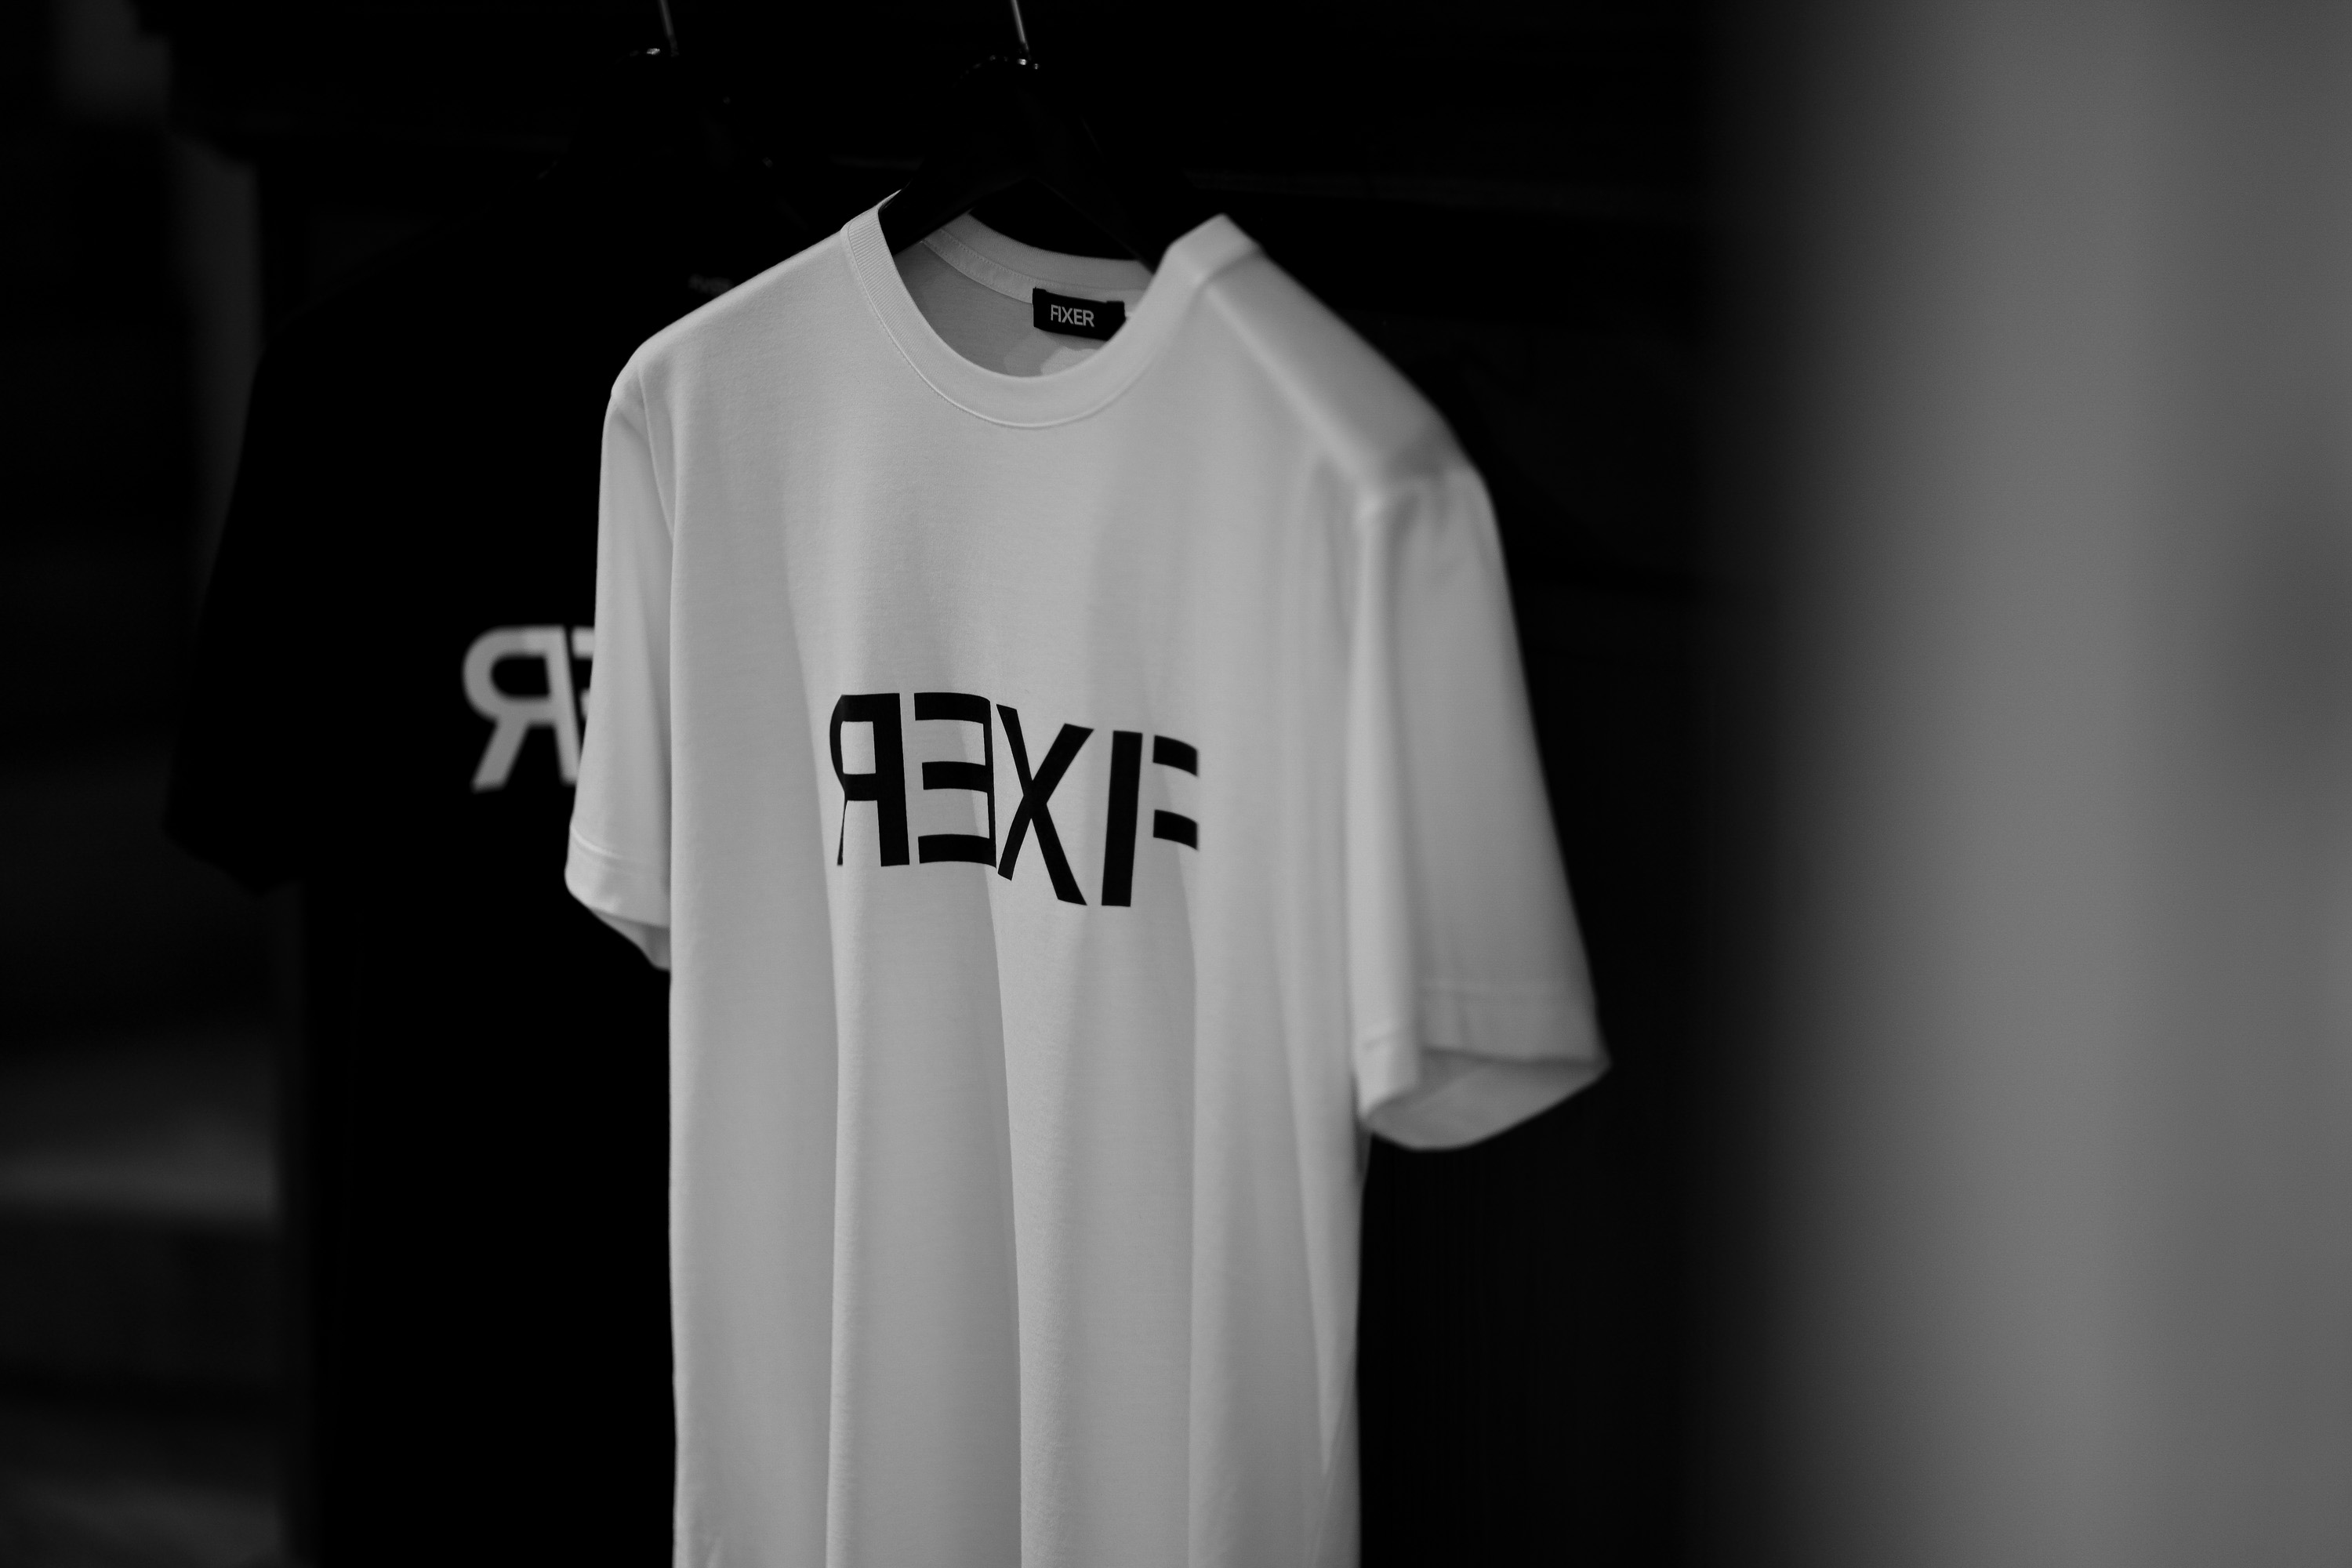 FIXER FTS-03 Reverse Print Crew Neck T-shirt WHITE,BLACK フィクサー Tシャツ リバースプリント クルーネックTシャツ ホワイト ブラック Alto e Diritto altoediritto アルトエデリット 愛知 名古屋 TEE スペシャルモデル